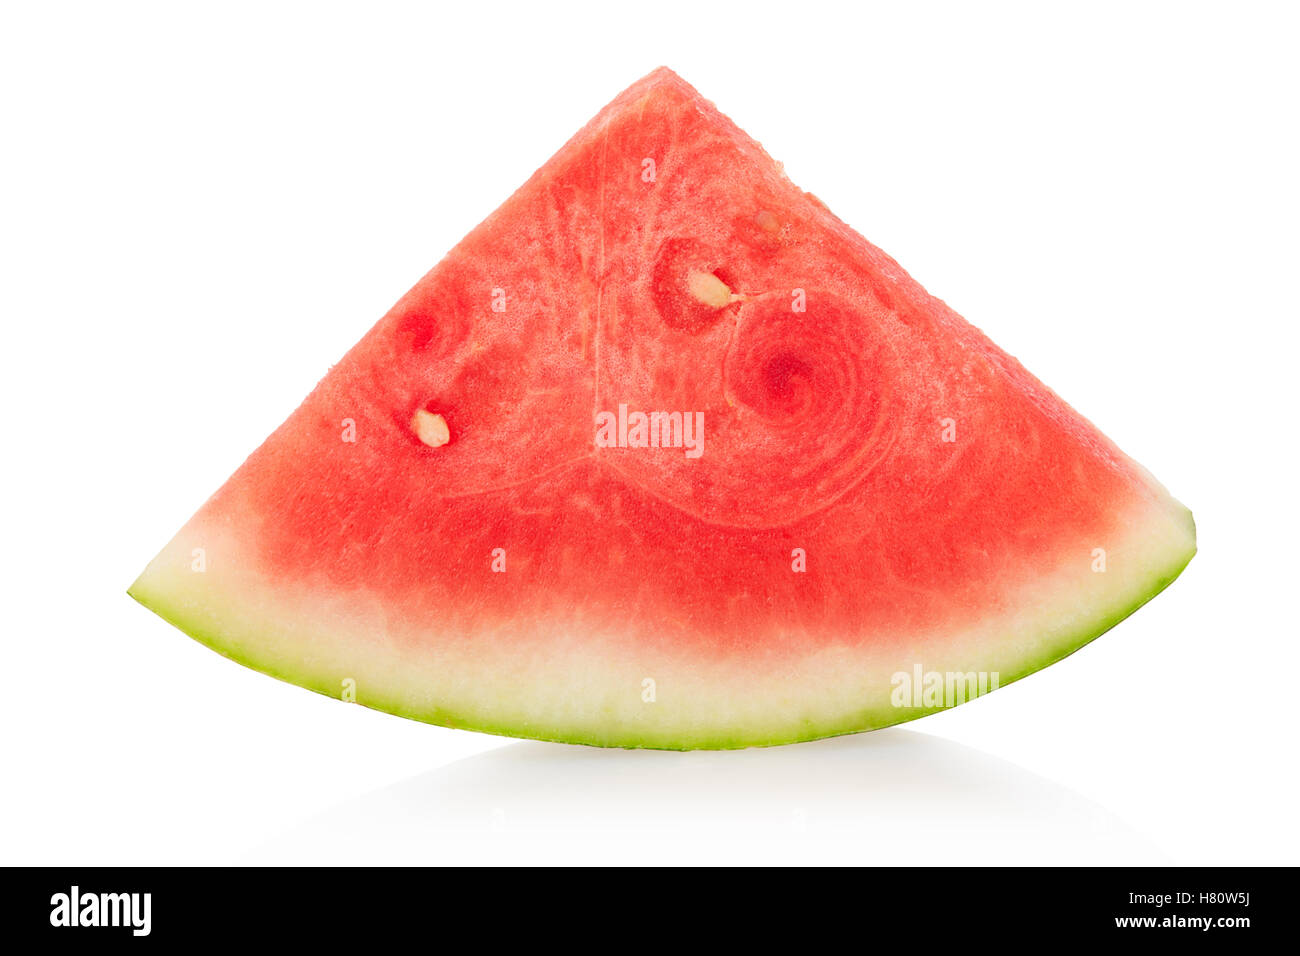 Dreieckige Scheibe Wassermelone auf weiße, Clipping-Pfad enthalten Stockfoto